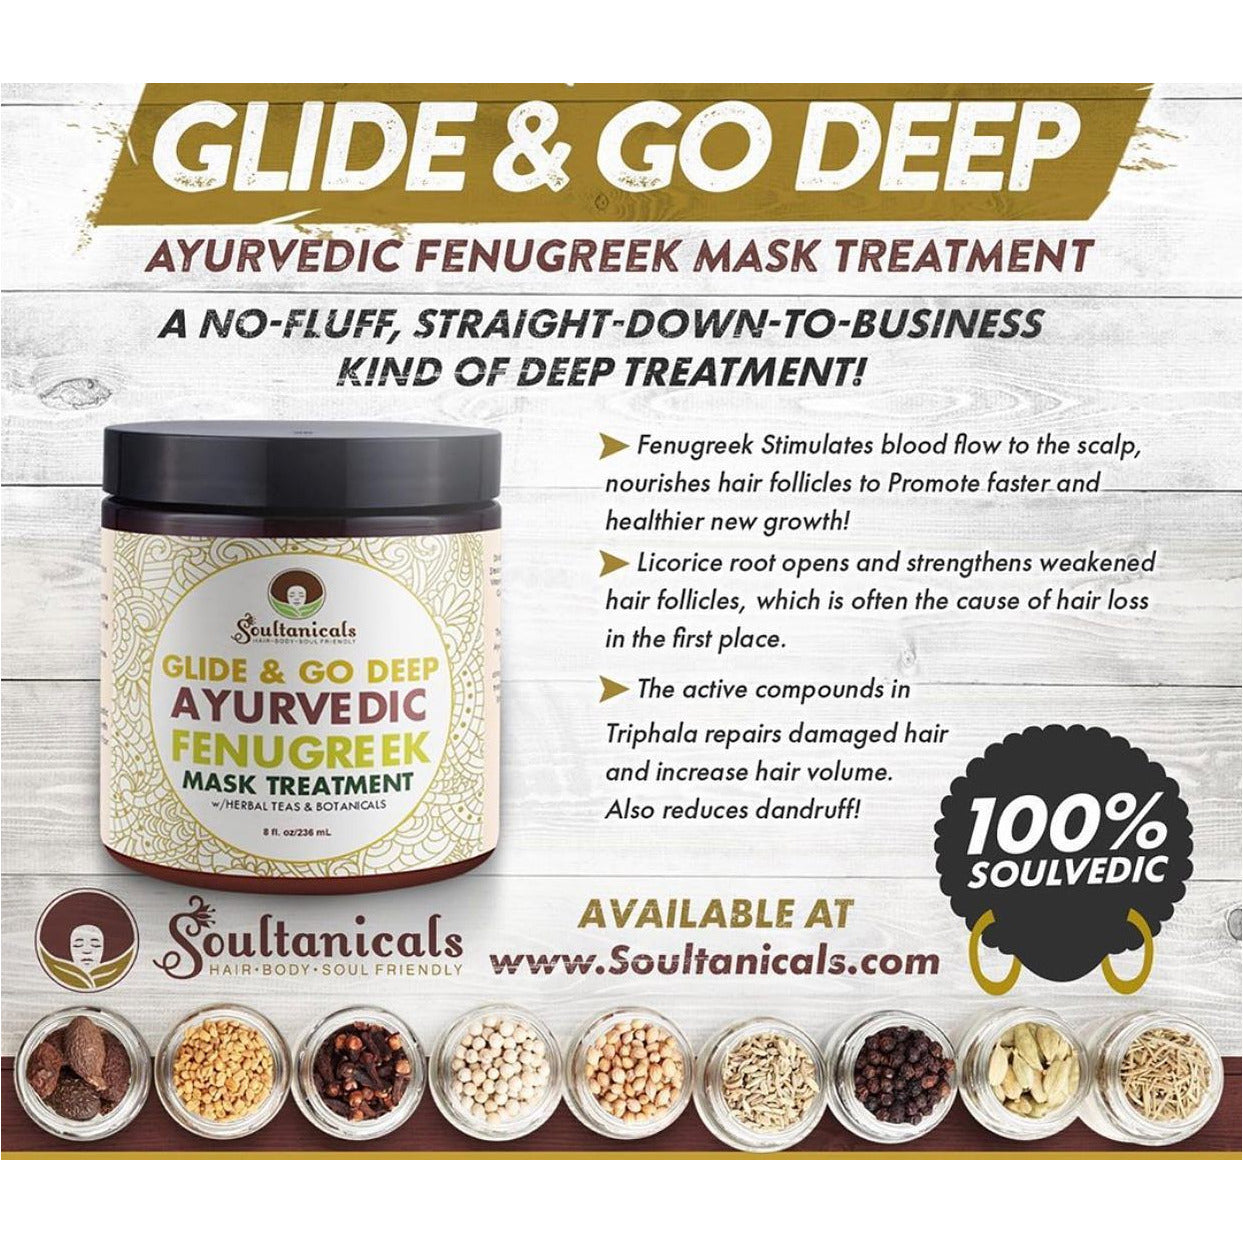 Glide & Go Deep Ayurvedic Fenugreek Mask Treatment